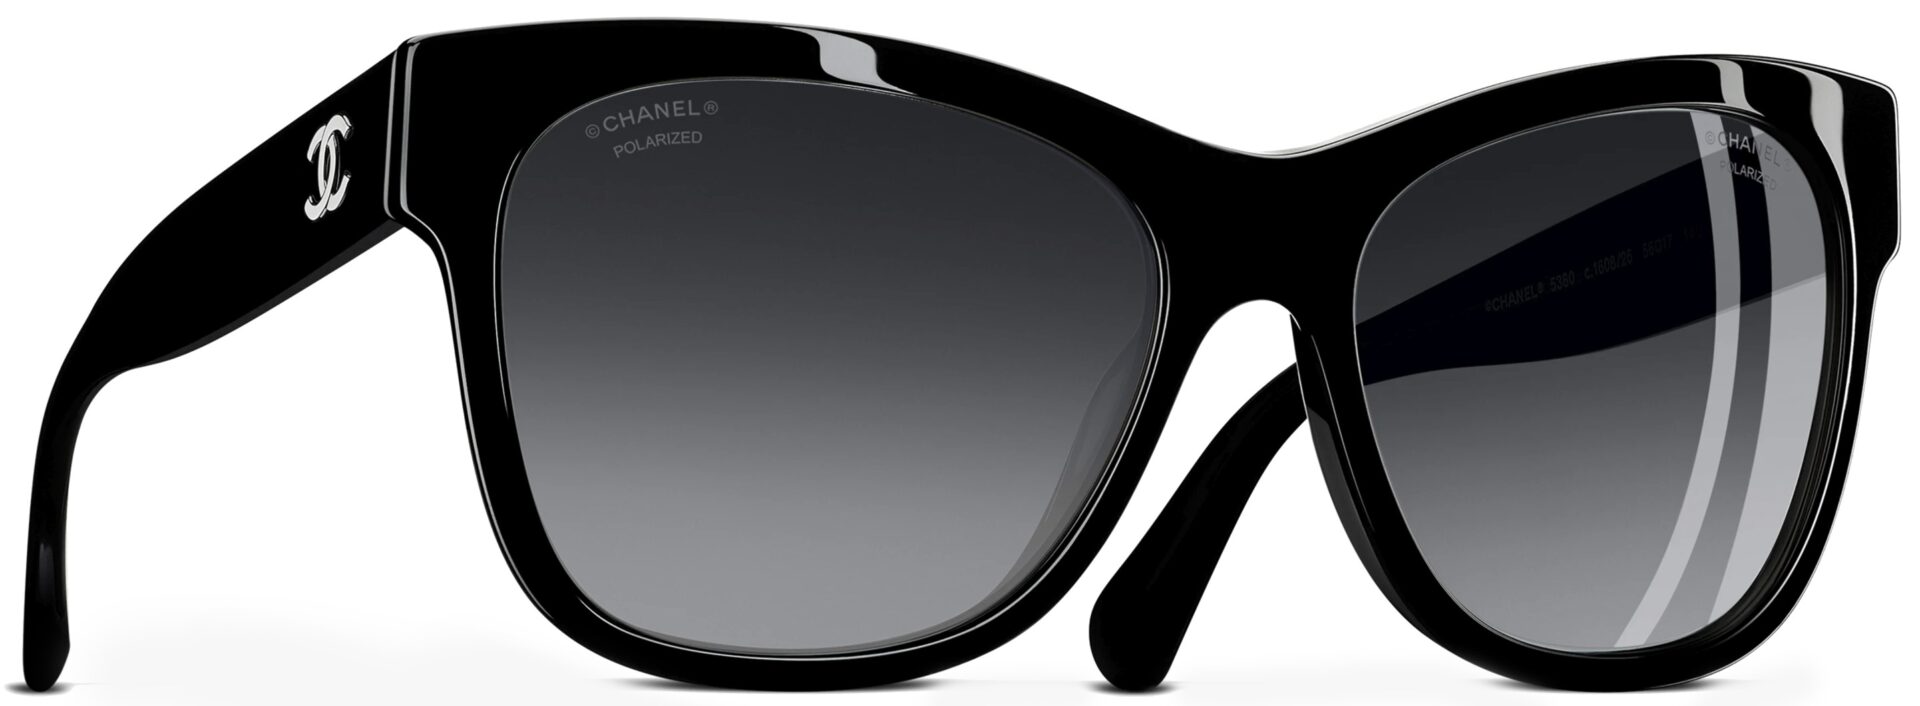 Quasar Sunglasses (Black) | style